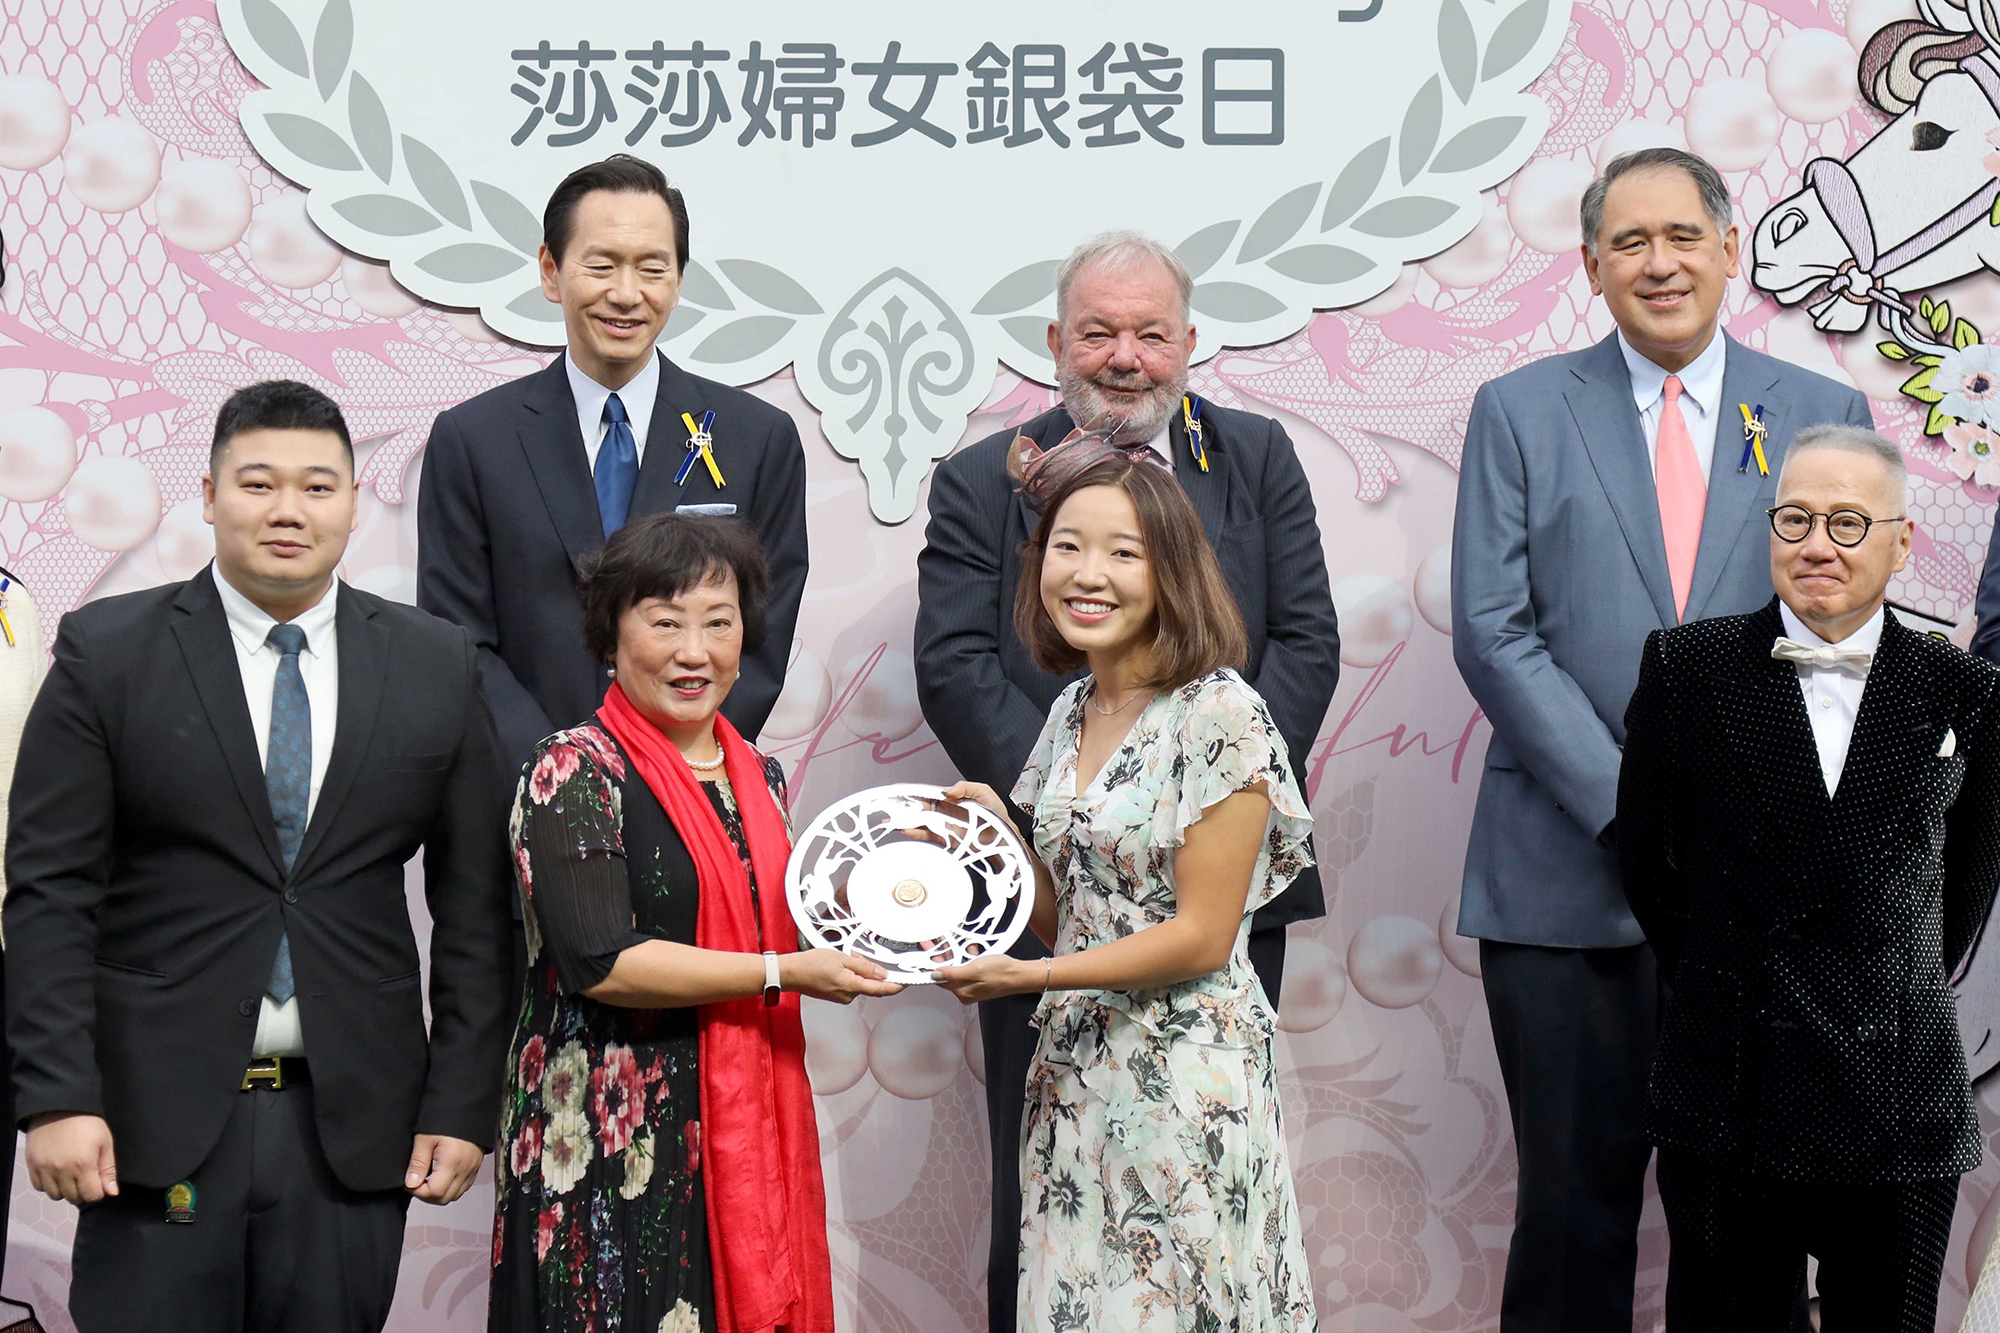 香港賽馬會遴選會員兼馬主何志強先生的女兒何妍臻小姐，在莎莎婦女銀袋頒獎儀式上頒發紀念銀碟予得勝馬匹「發財先鋒」的馬主太陽花團體代表。